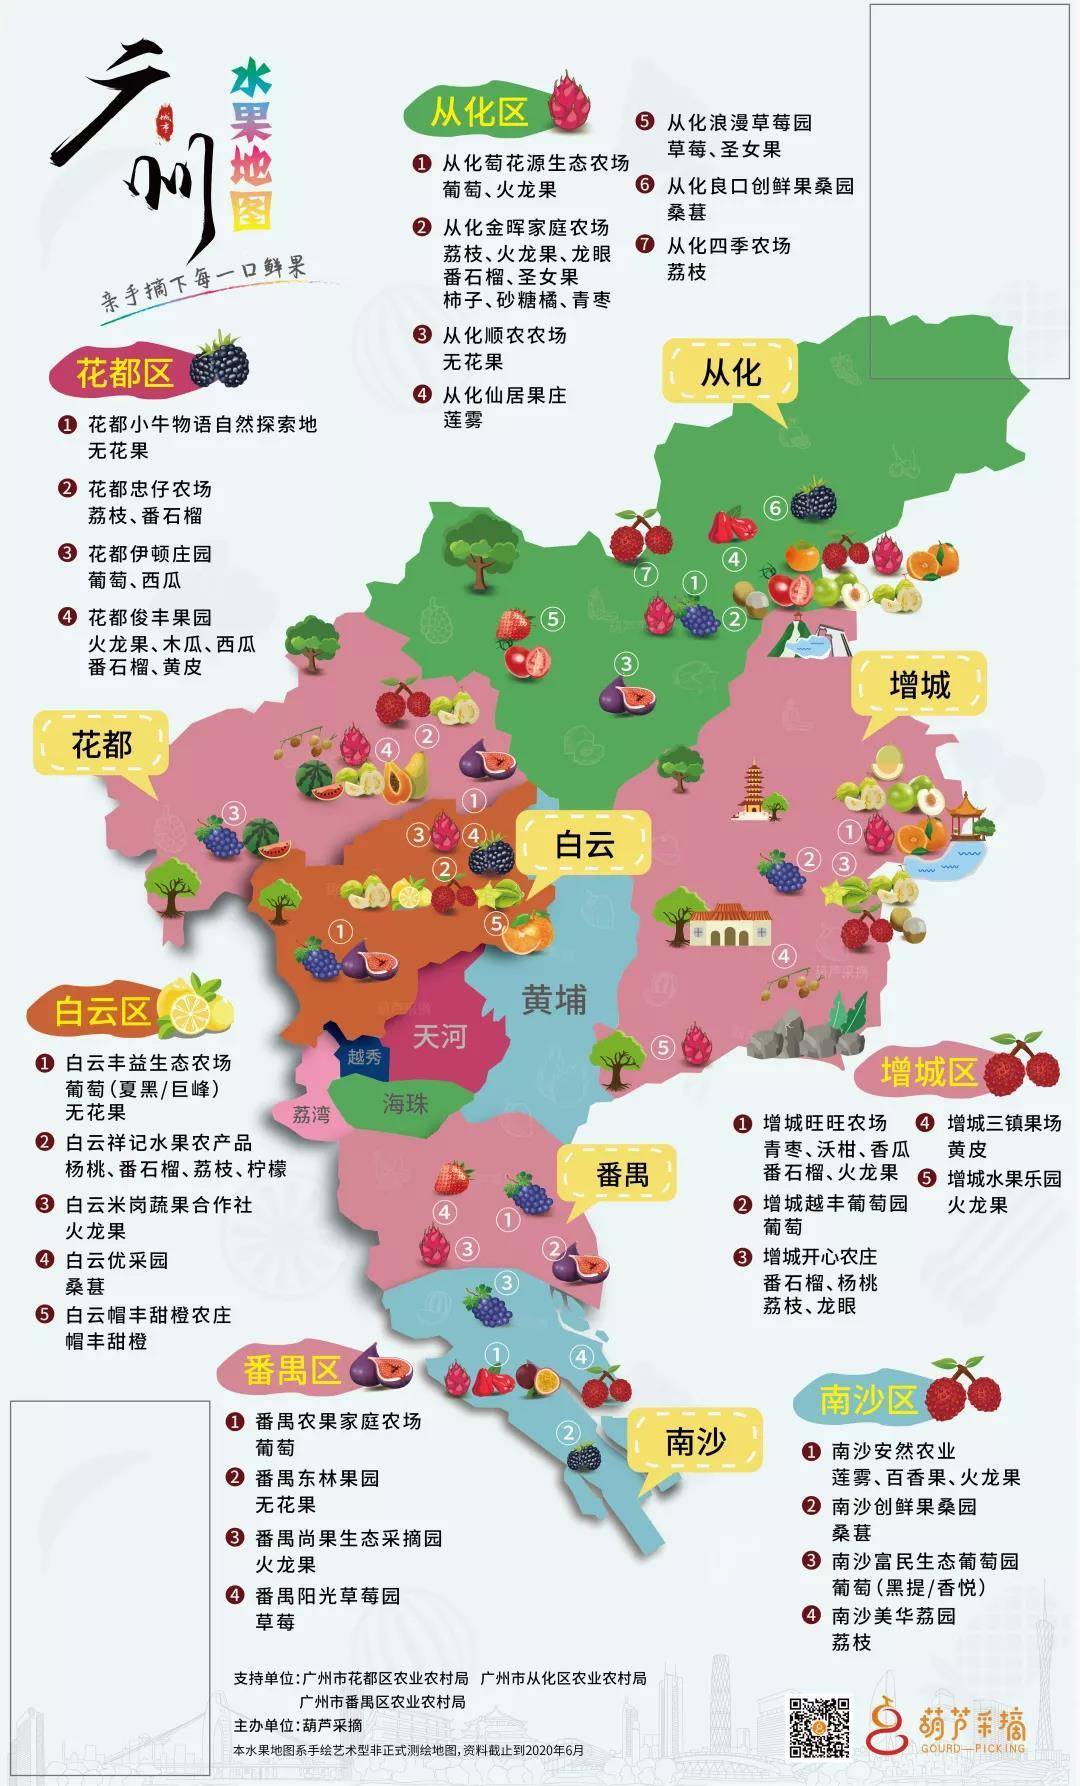 【广州】火爆上海、杭州等地的水果护照来广州啦！99元起，抢全家全年水果采摘，钻石版更有亲子农耕活动！